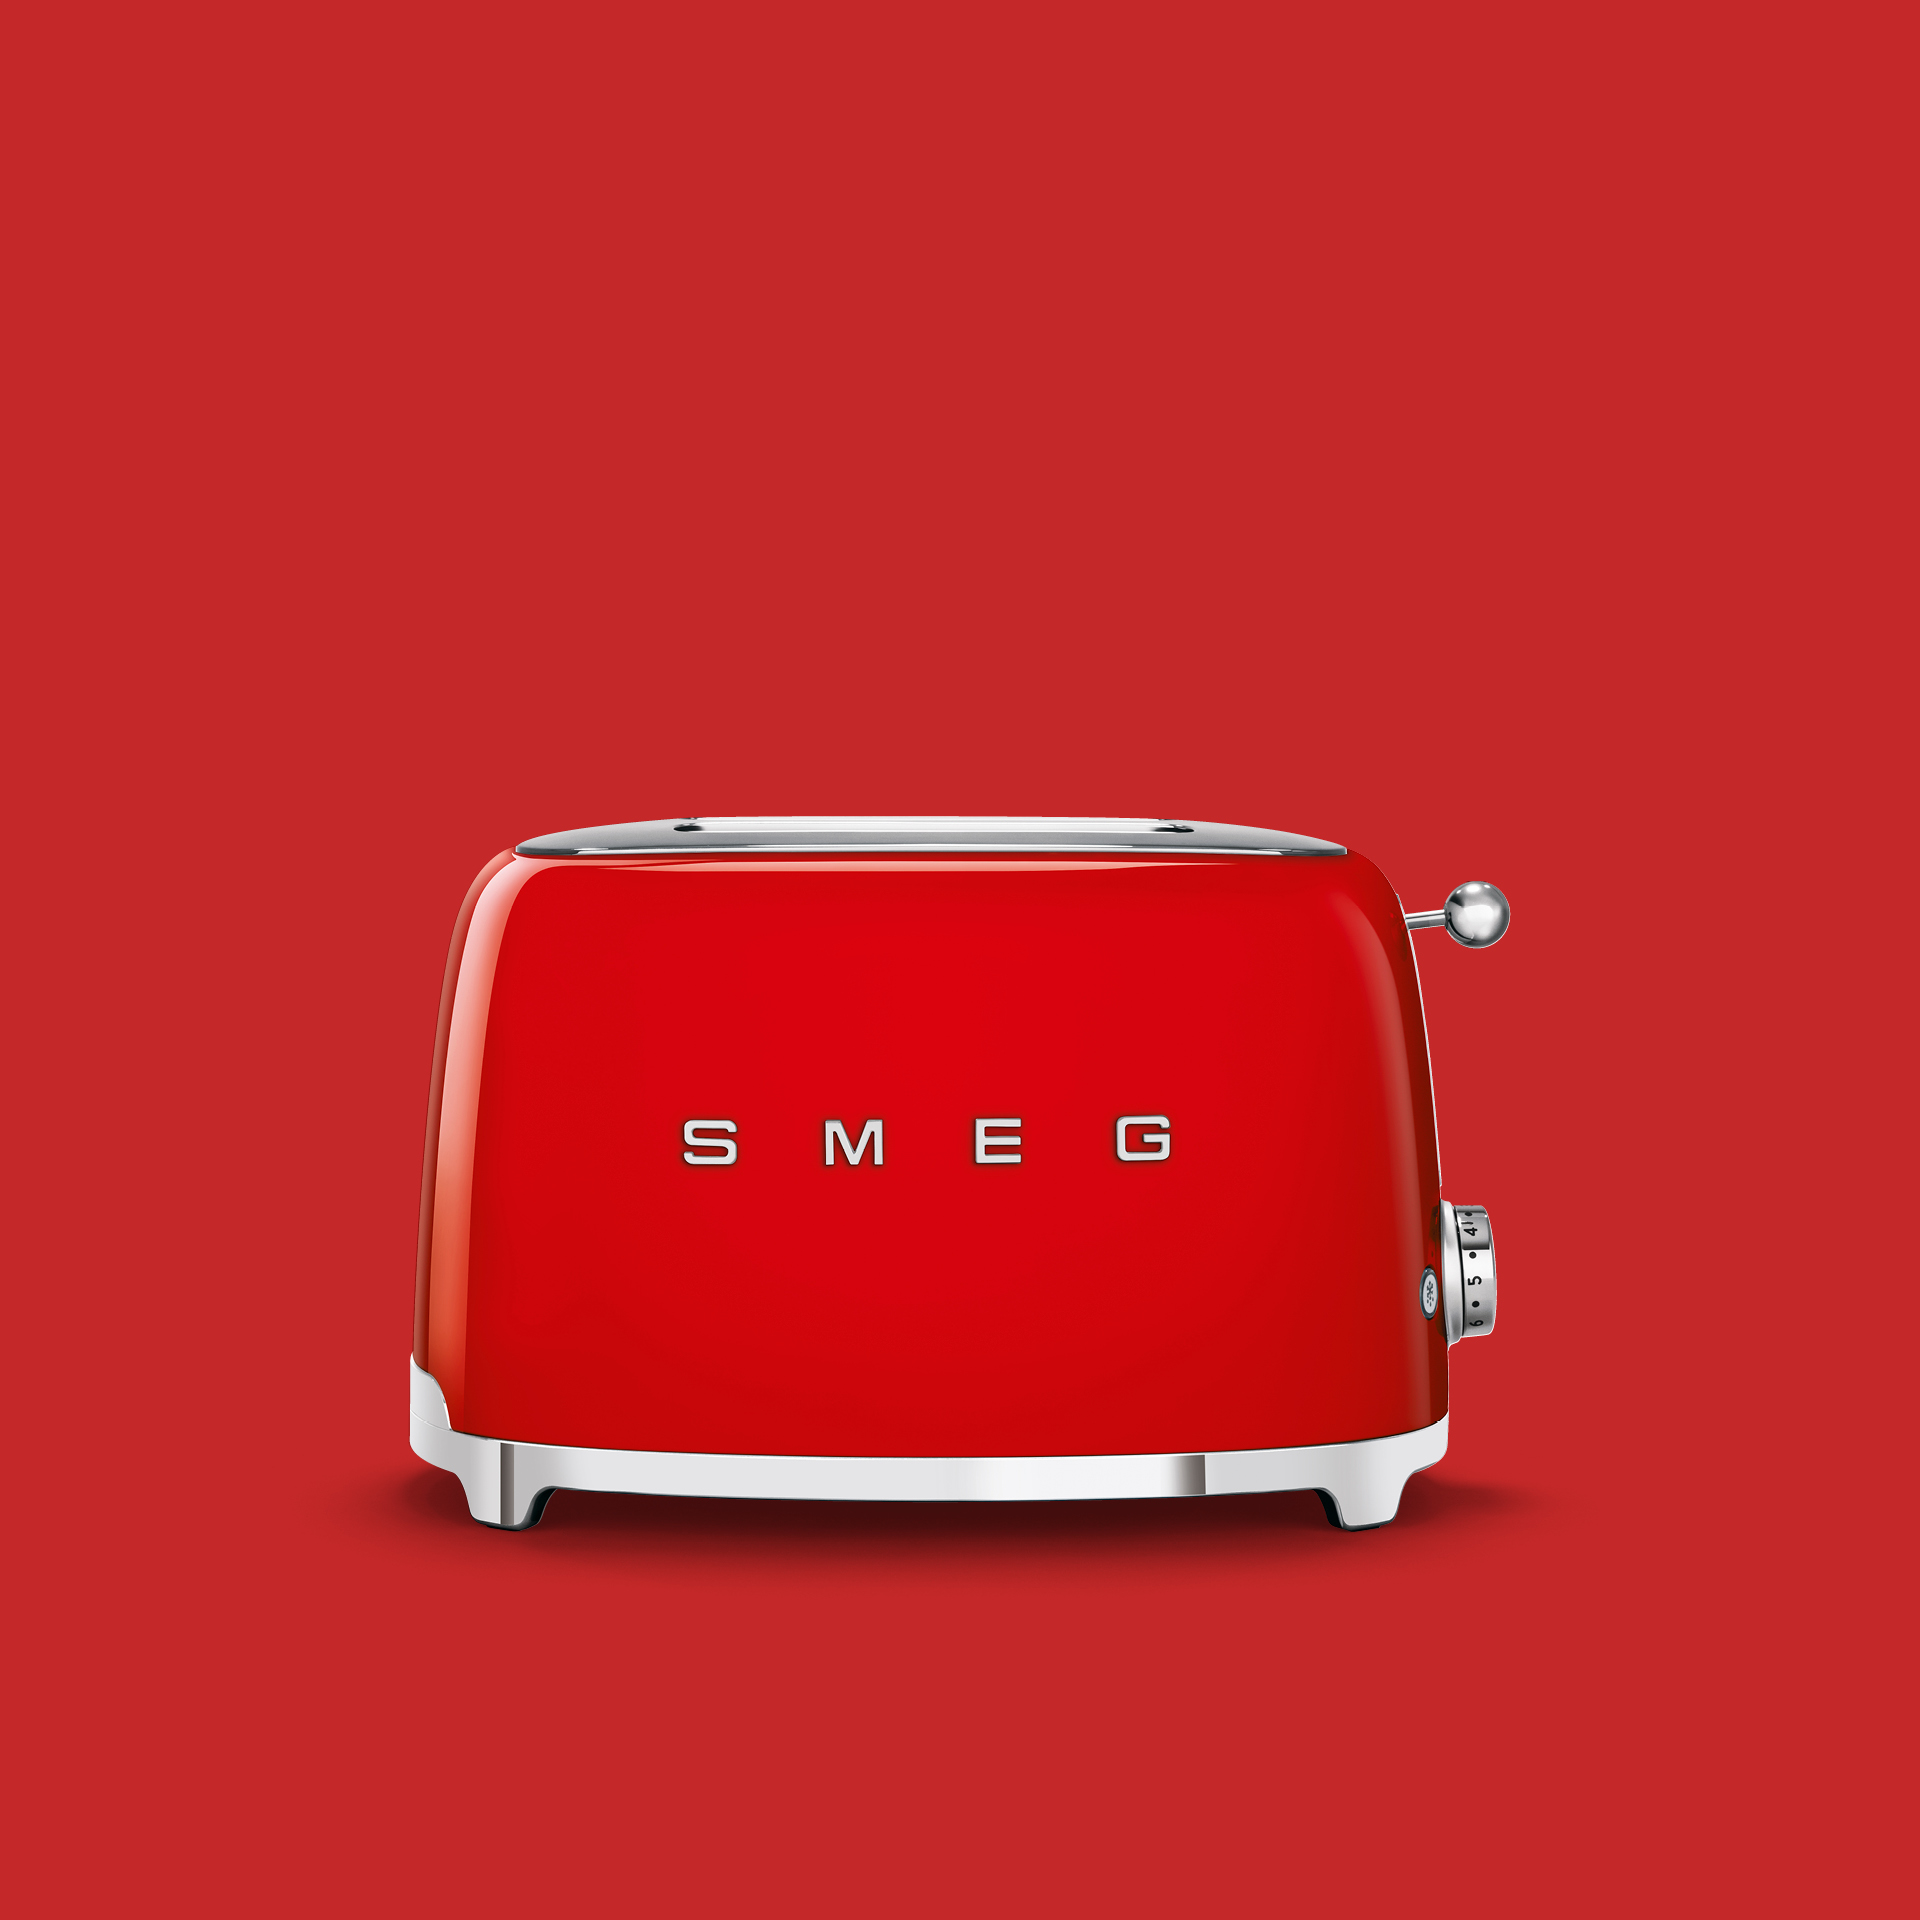 https://www.smeg.com/binaries/content/gallery/smeg/categories/sda_smeg_toasters.jpg